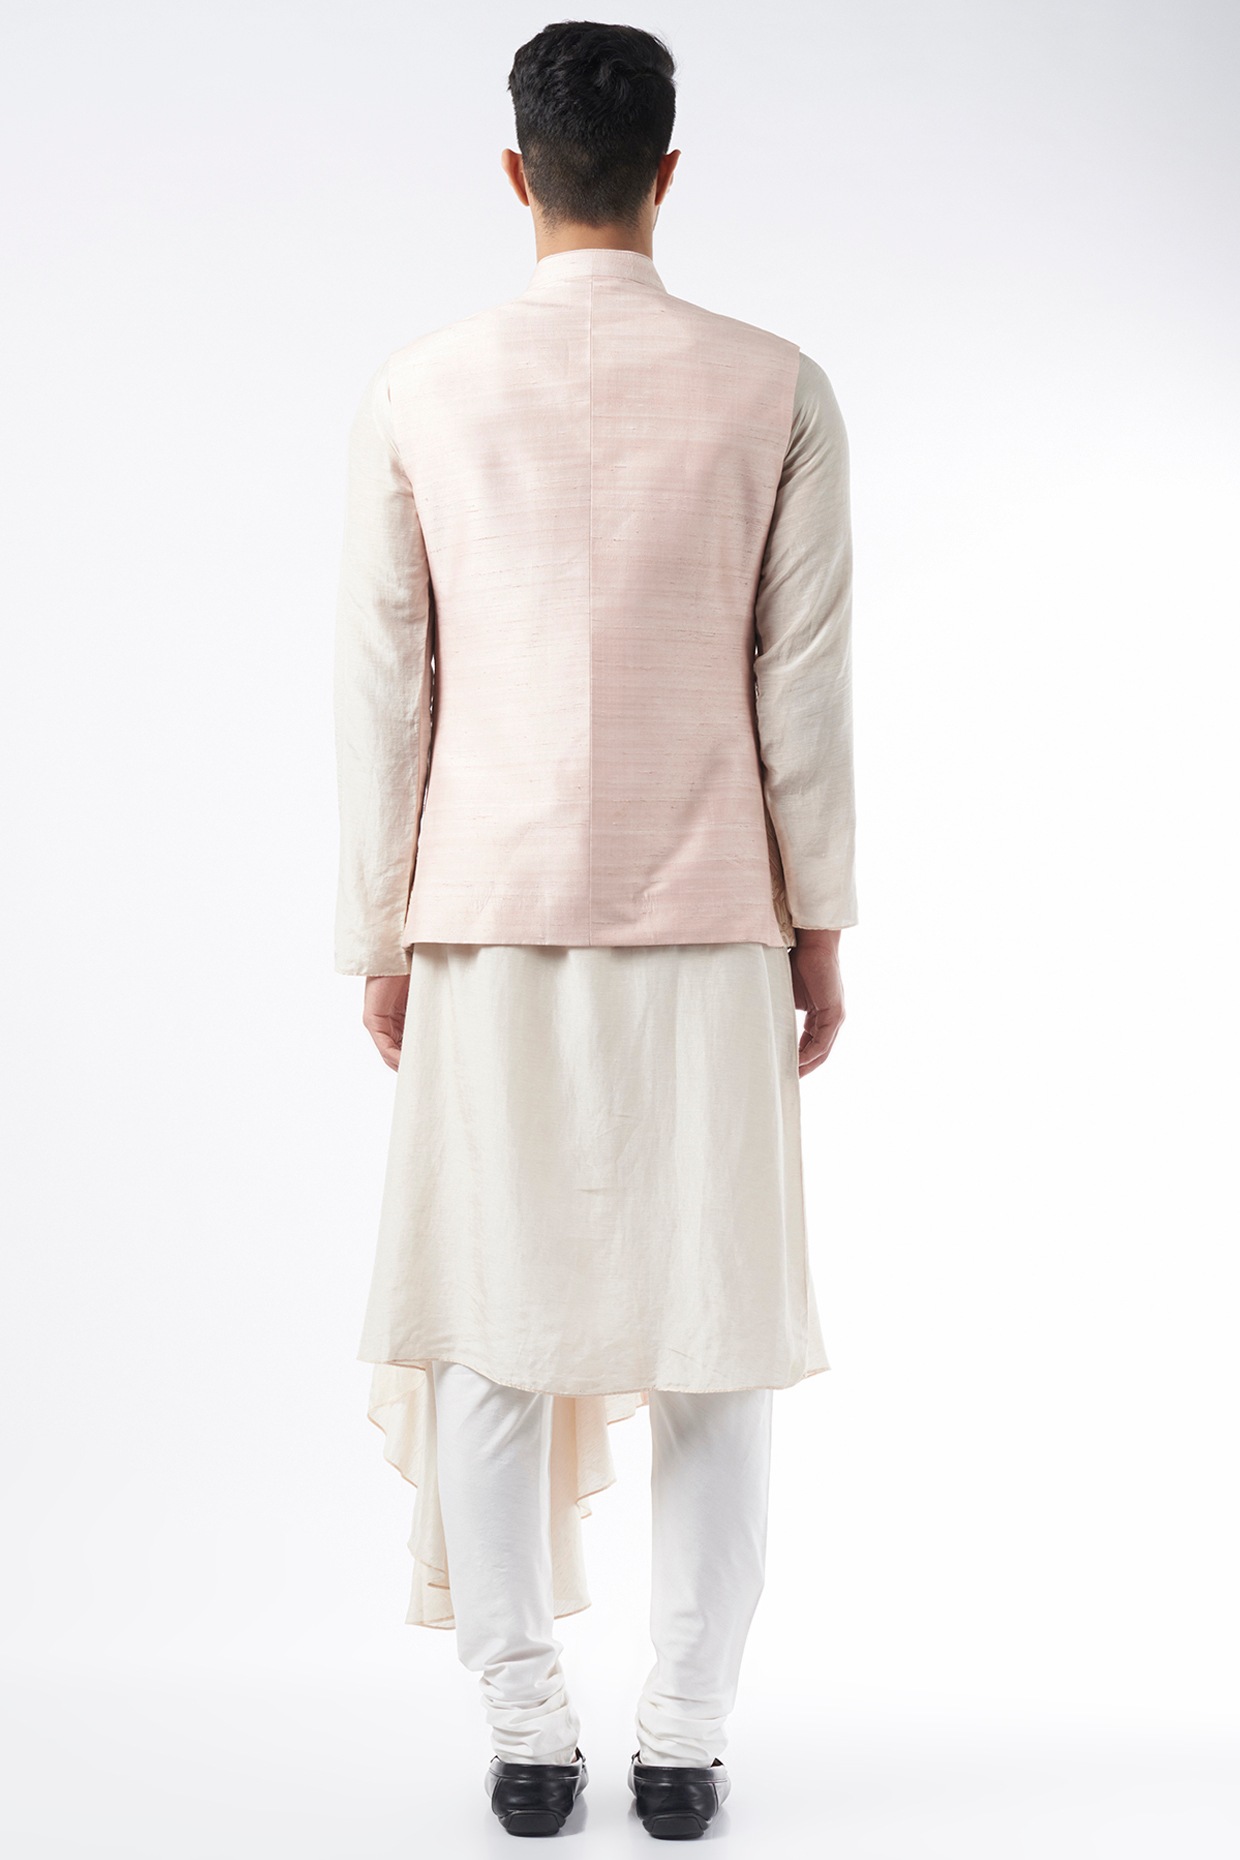 Men's Pink Color Nehru Jacket With Kurta Pant Set - Hilo Design | Kurta  with pants, Nehru jackets, Pants set